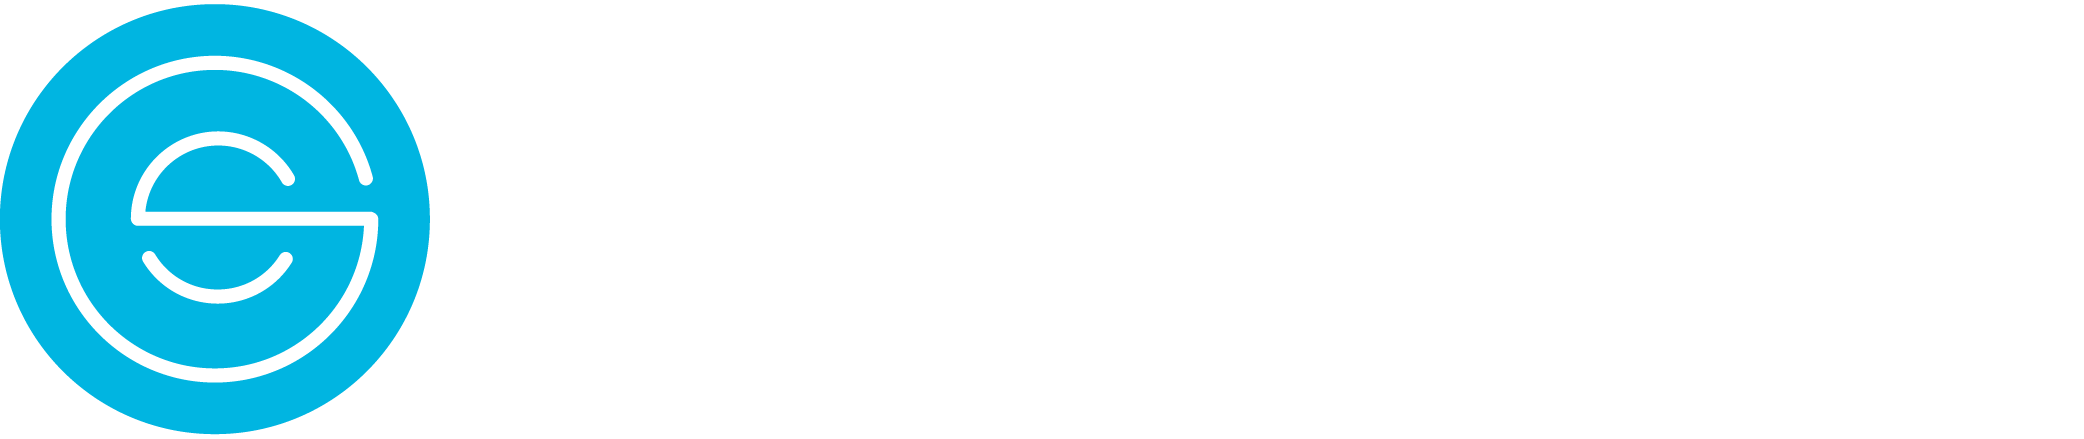 Great Smiles Pediatric Dentistry